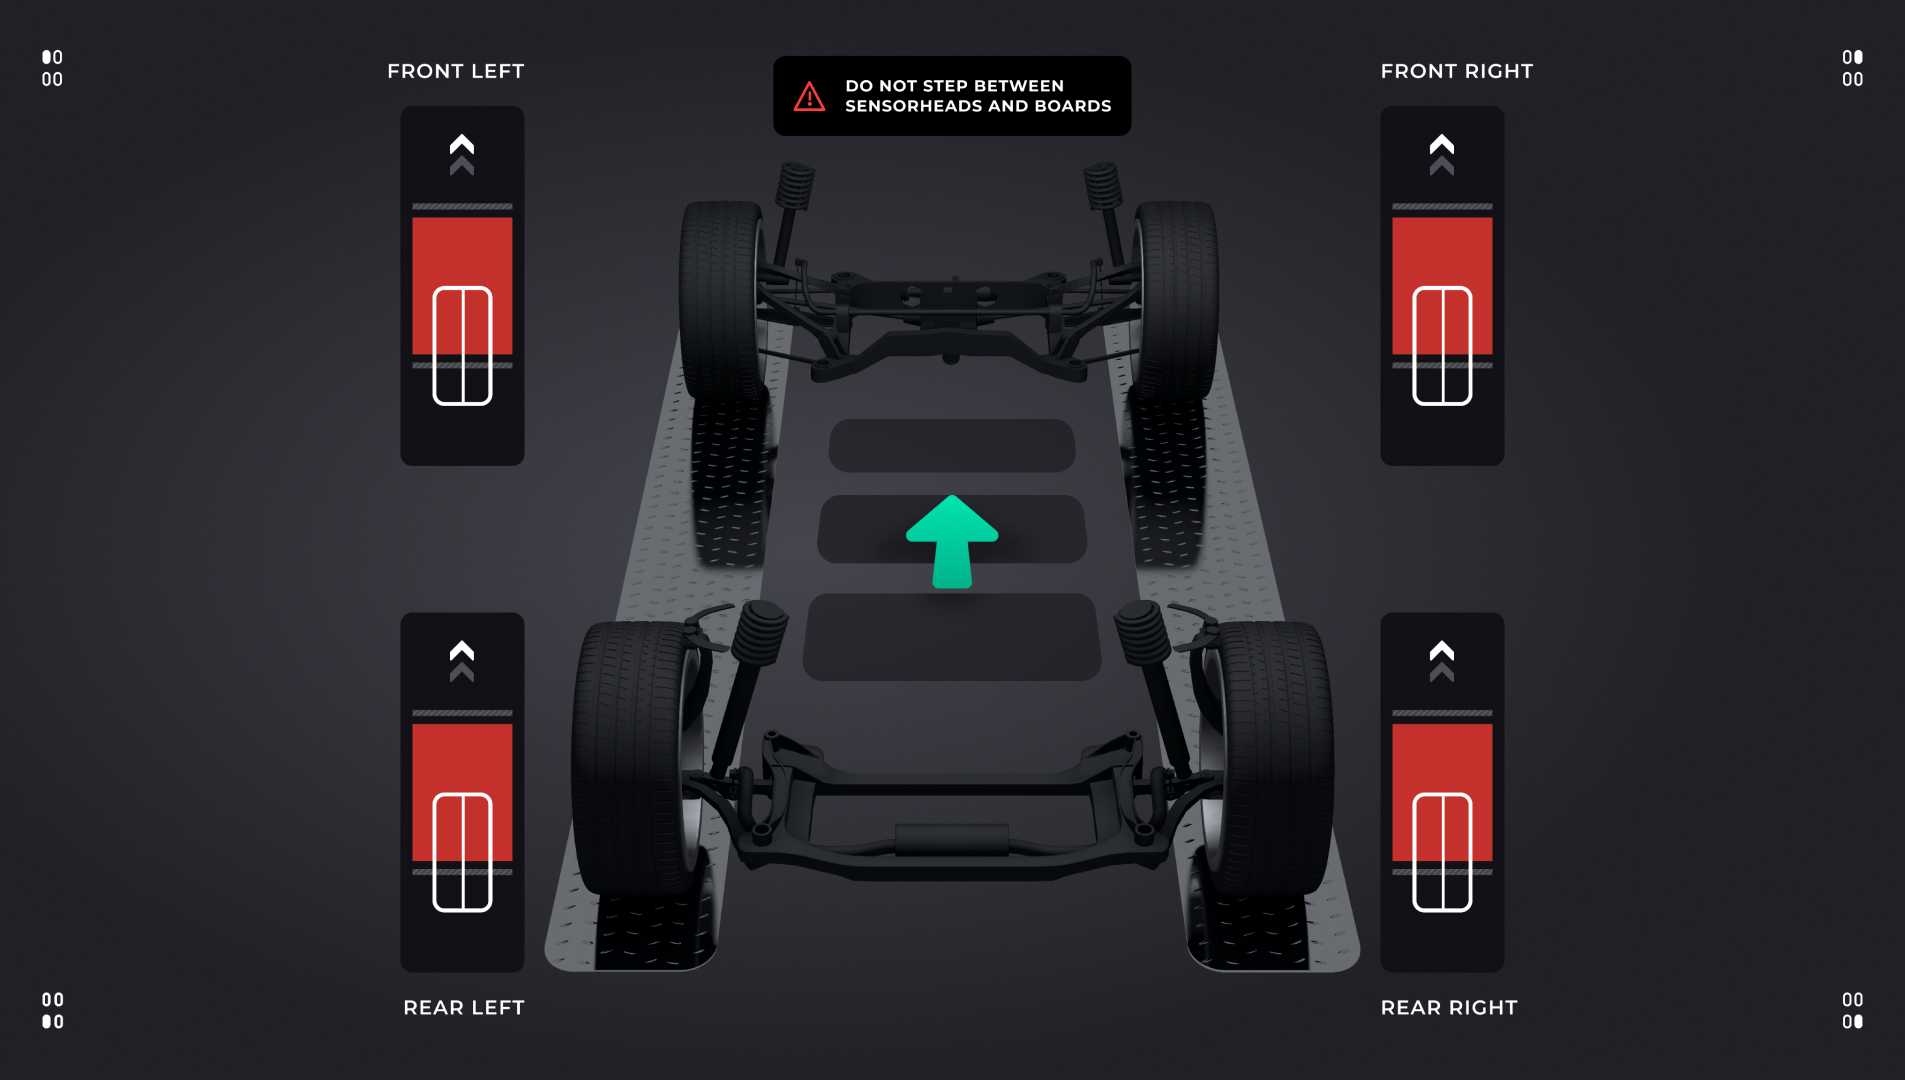 UI Design hilft dem Benutzer bei der Positionierung des Fahrzeugs.